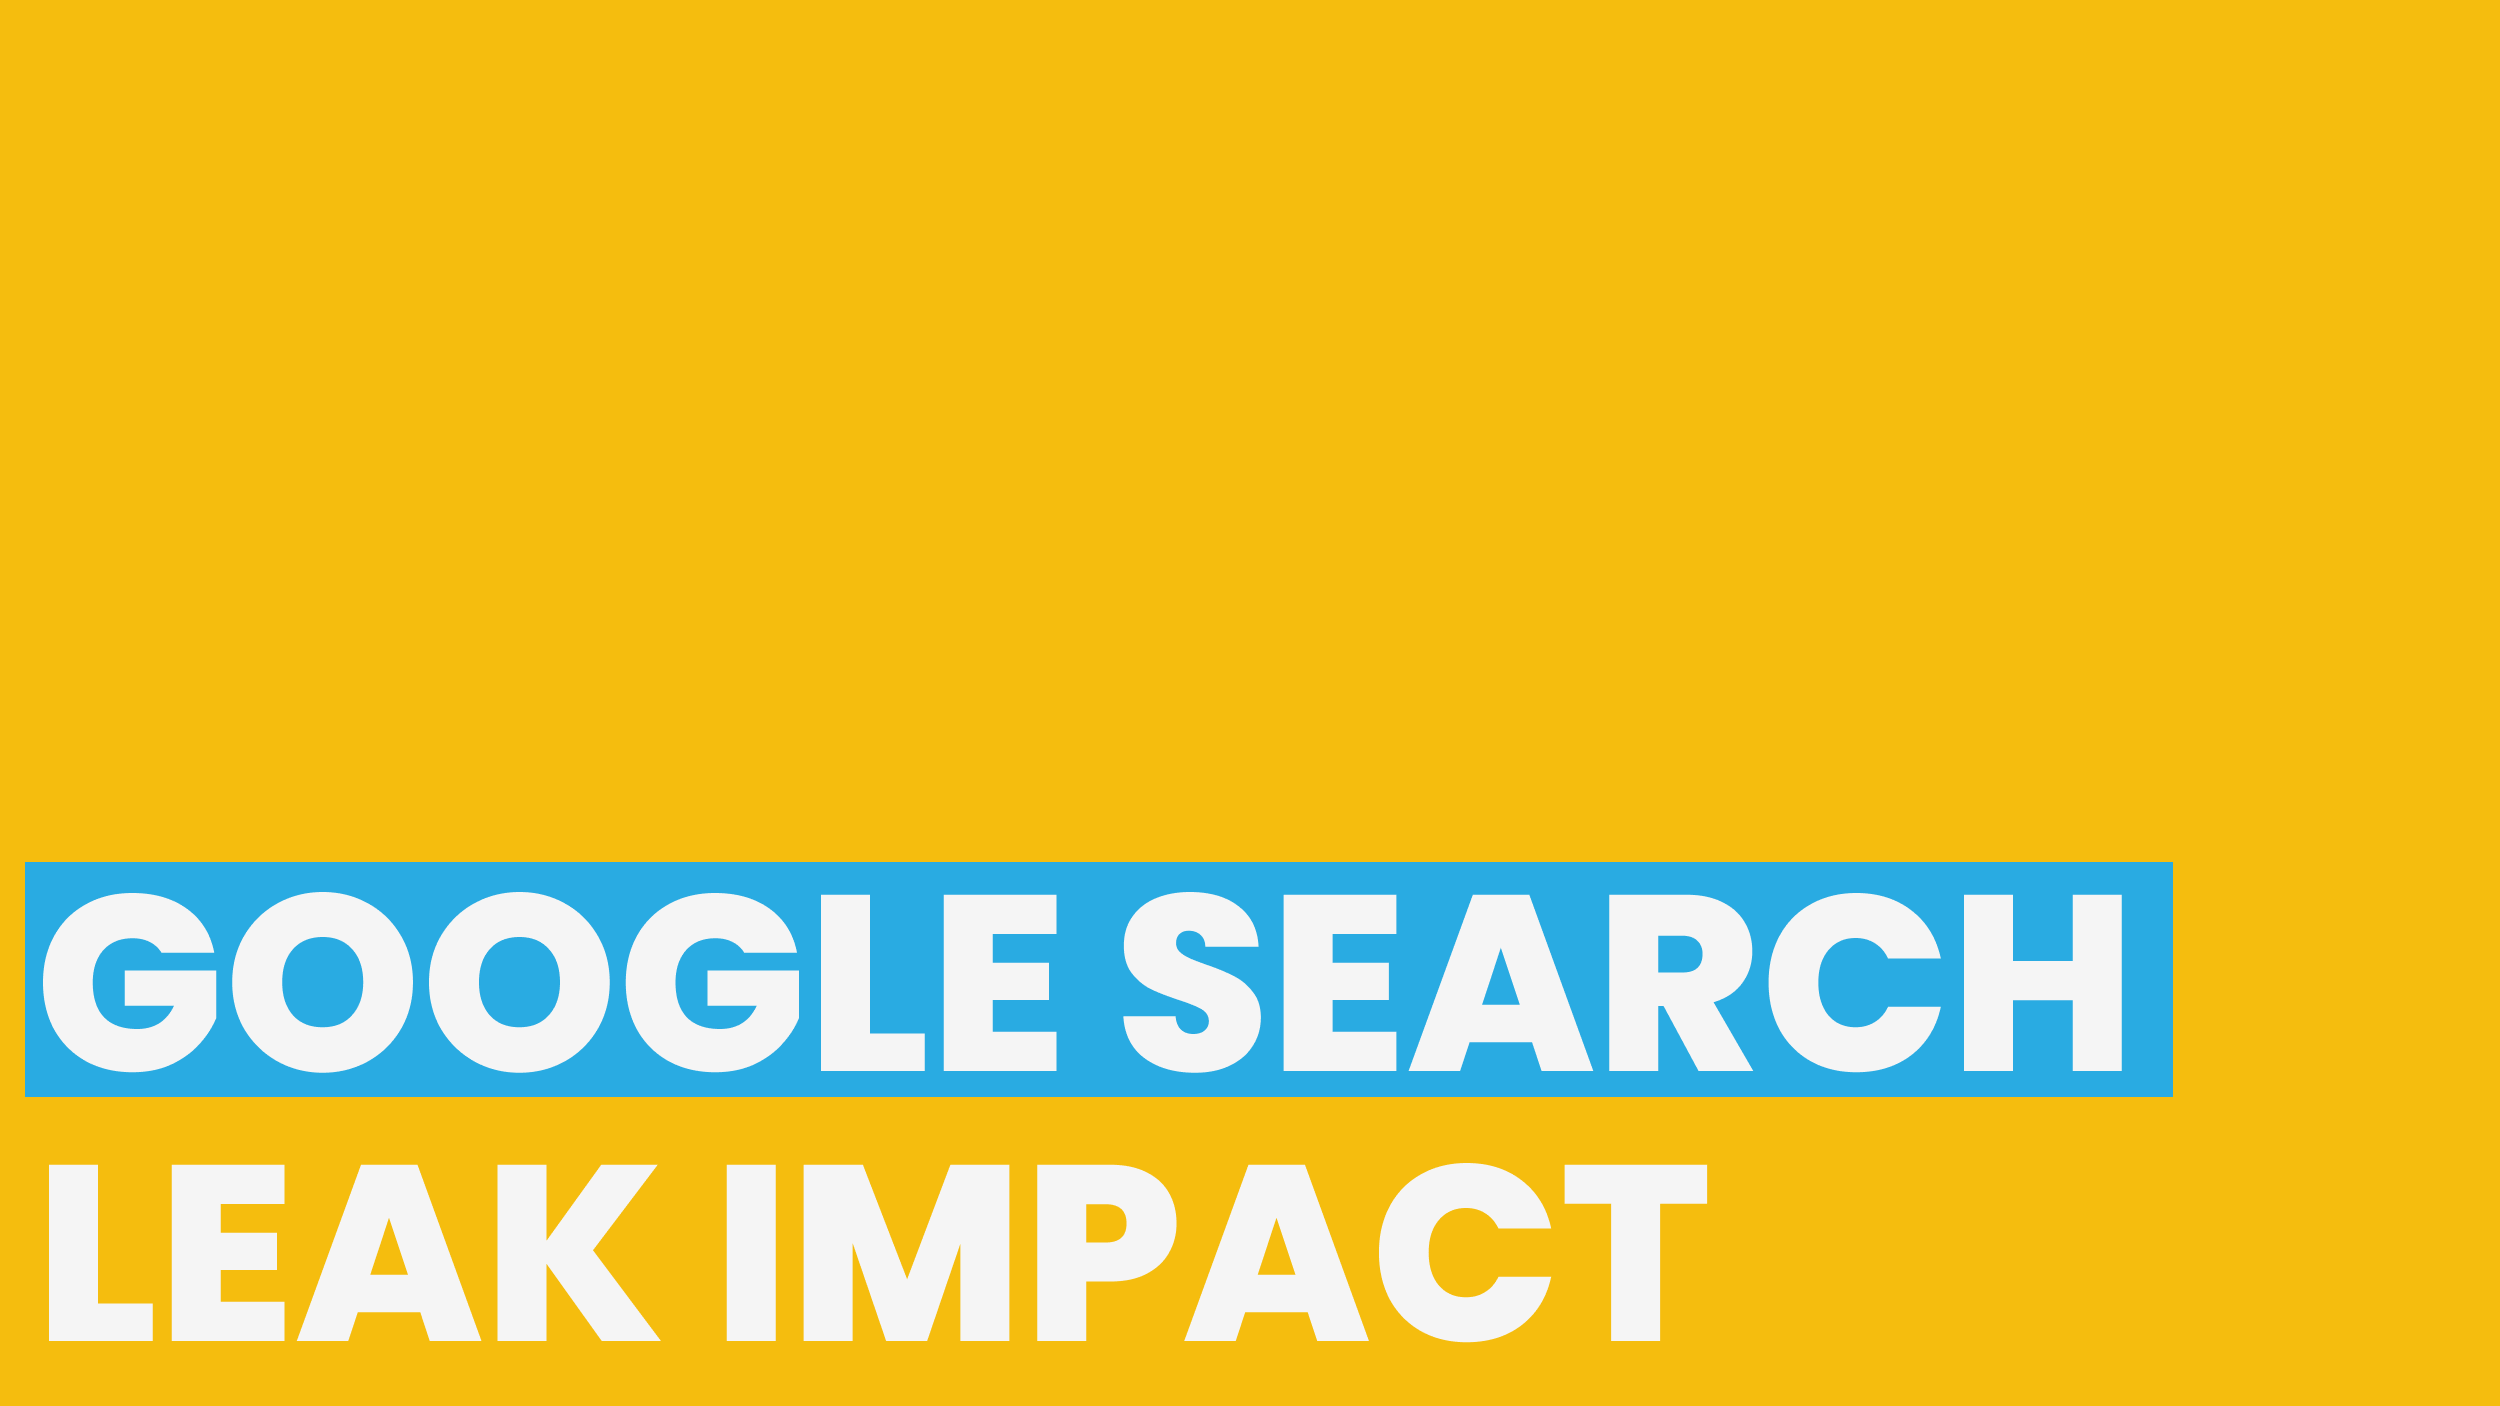 Google Search Leak Impact